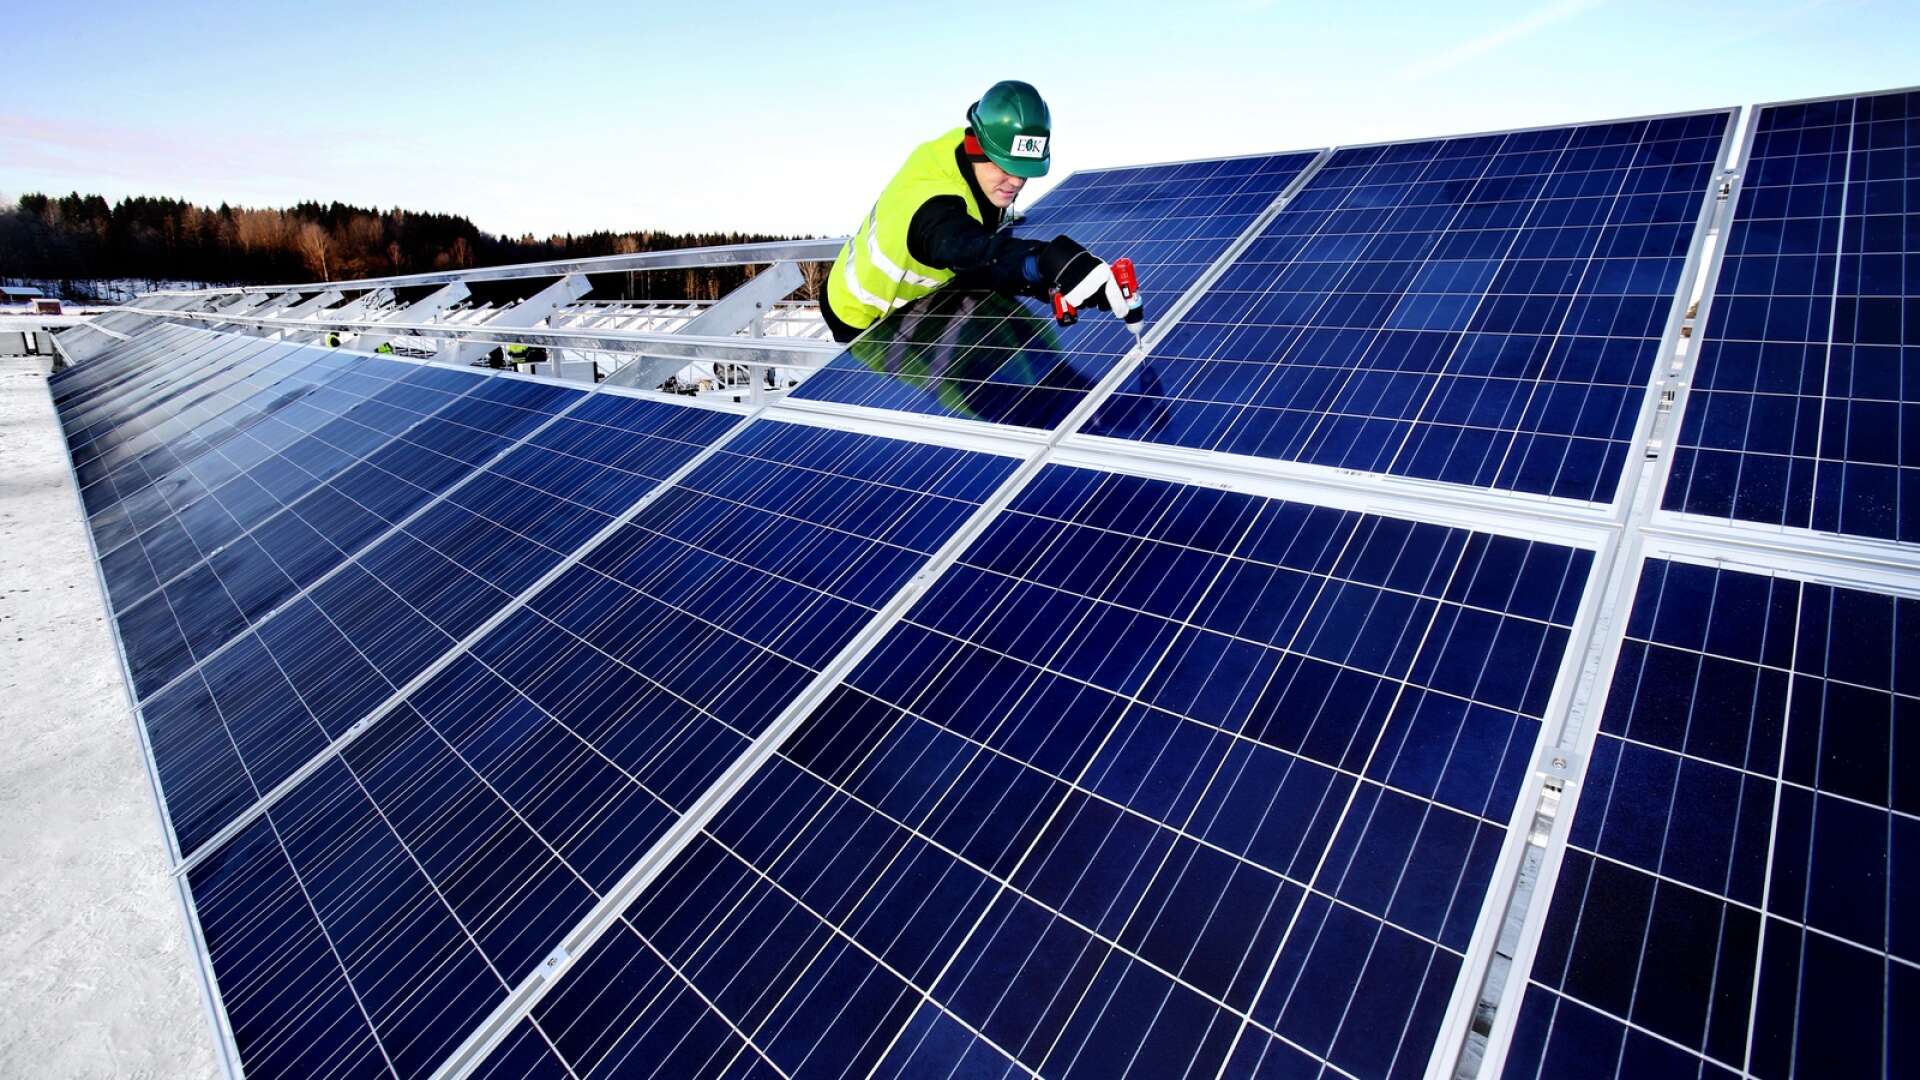 Per Eriksson vill se en snabbare omställning till grön energi i Bengtsfors kommun och föreslår att undersöka möjligheterna att etablera en samägd solcellsanläggning/park.